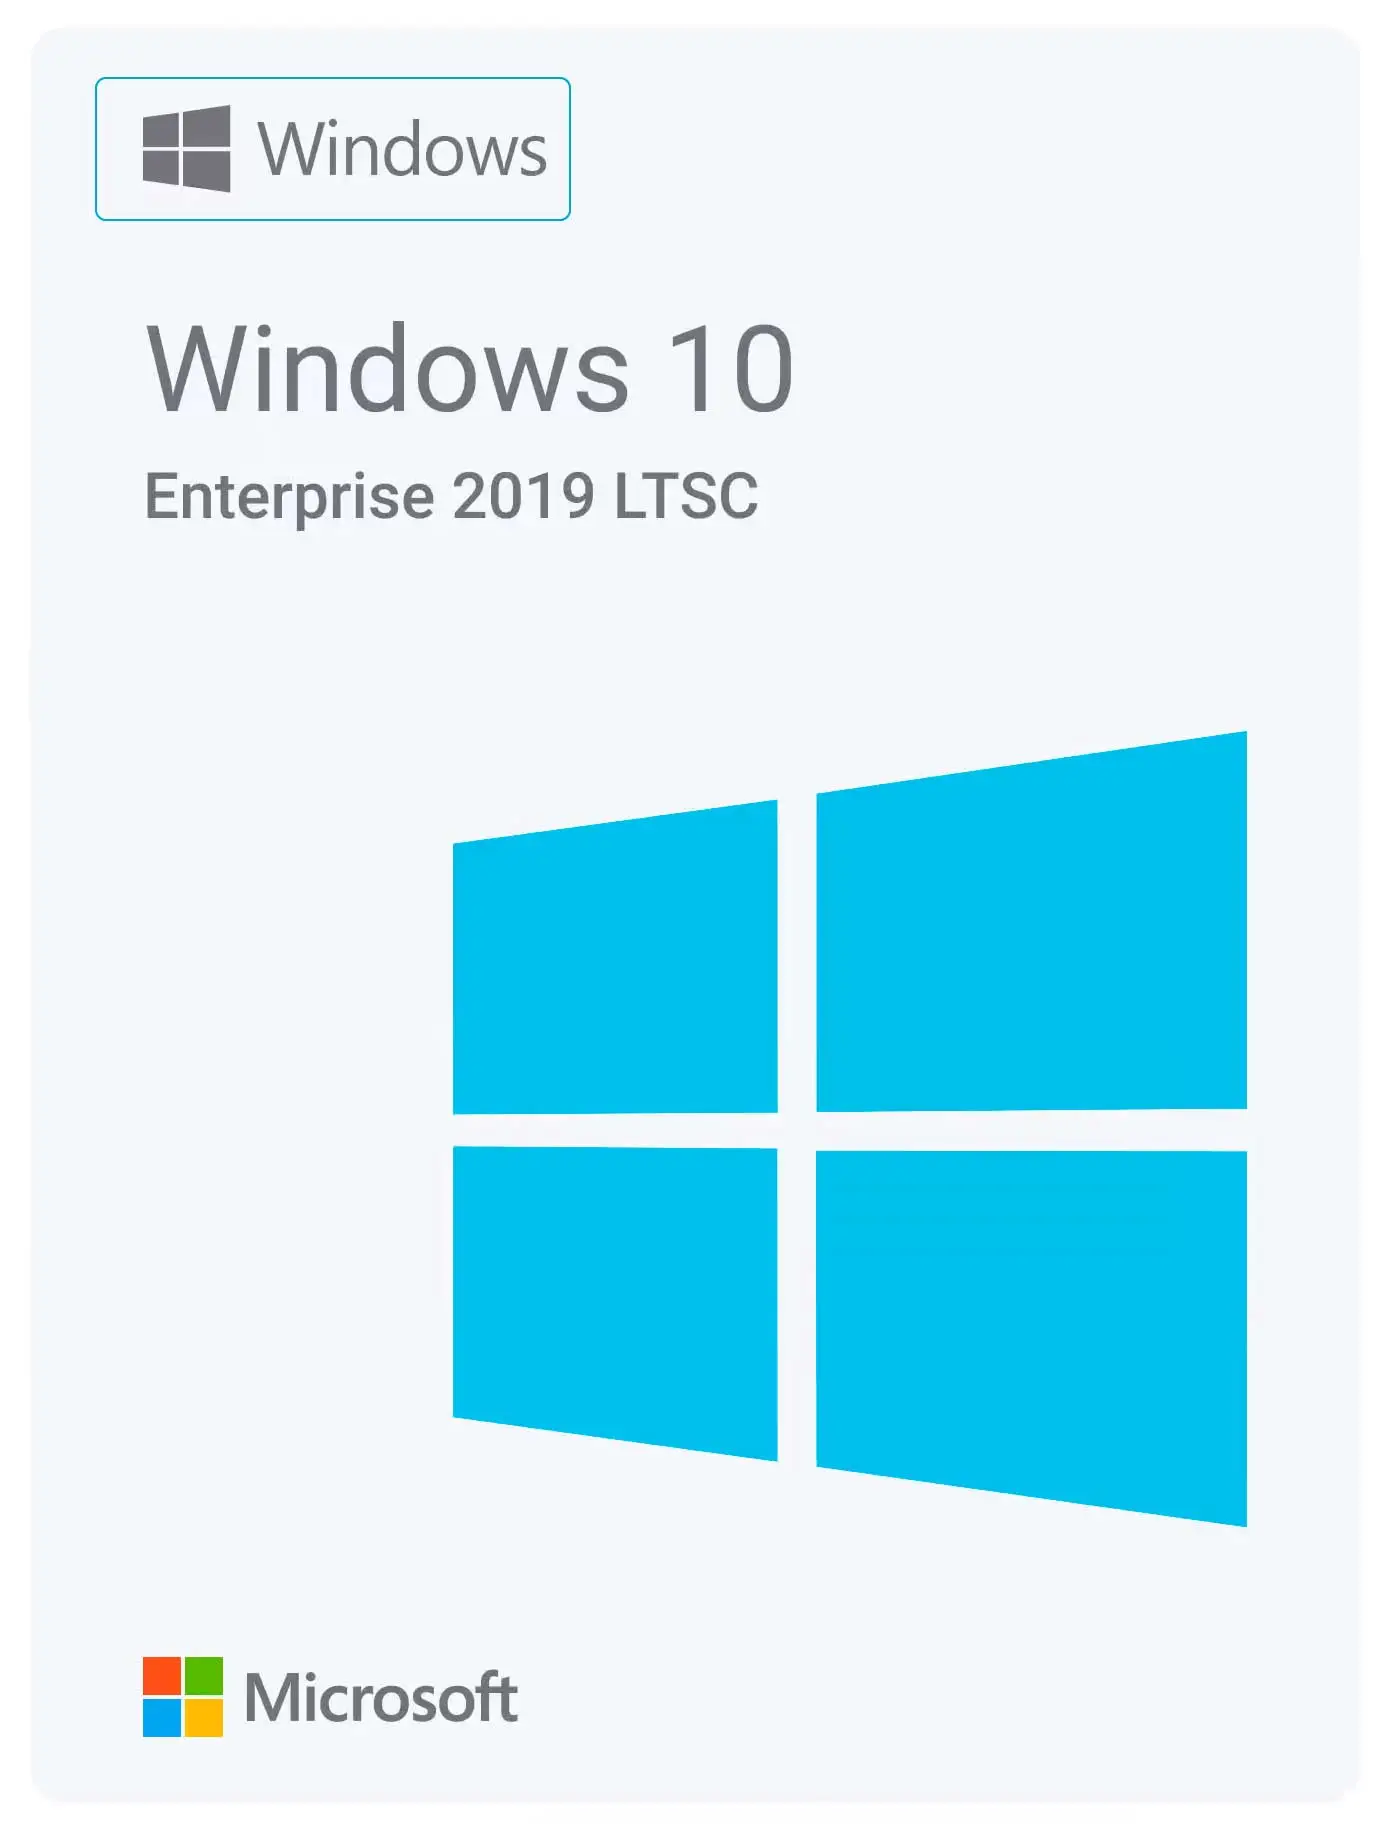 Microsoft Windows 10 Enterprise 2019 LTSC